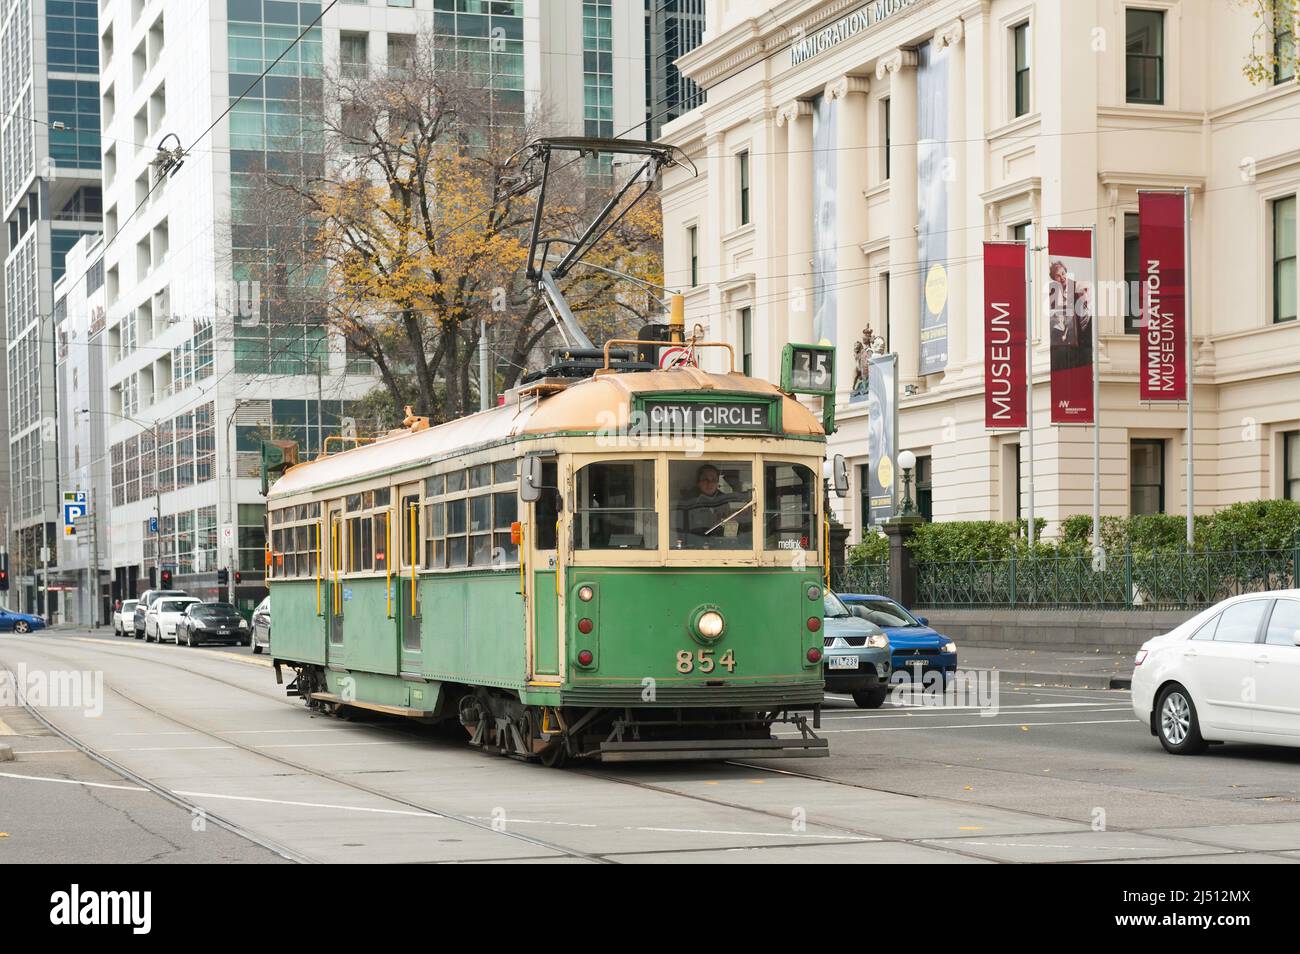 Le tram City Circle lors d'une journée froide de Winters dans le centre de Melbourne, passant devant le Musée de l'immigration. Banque D'Images